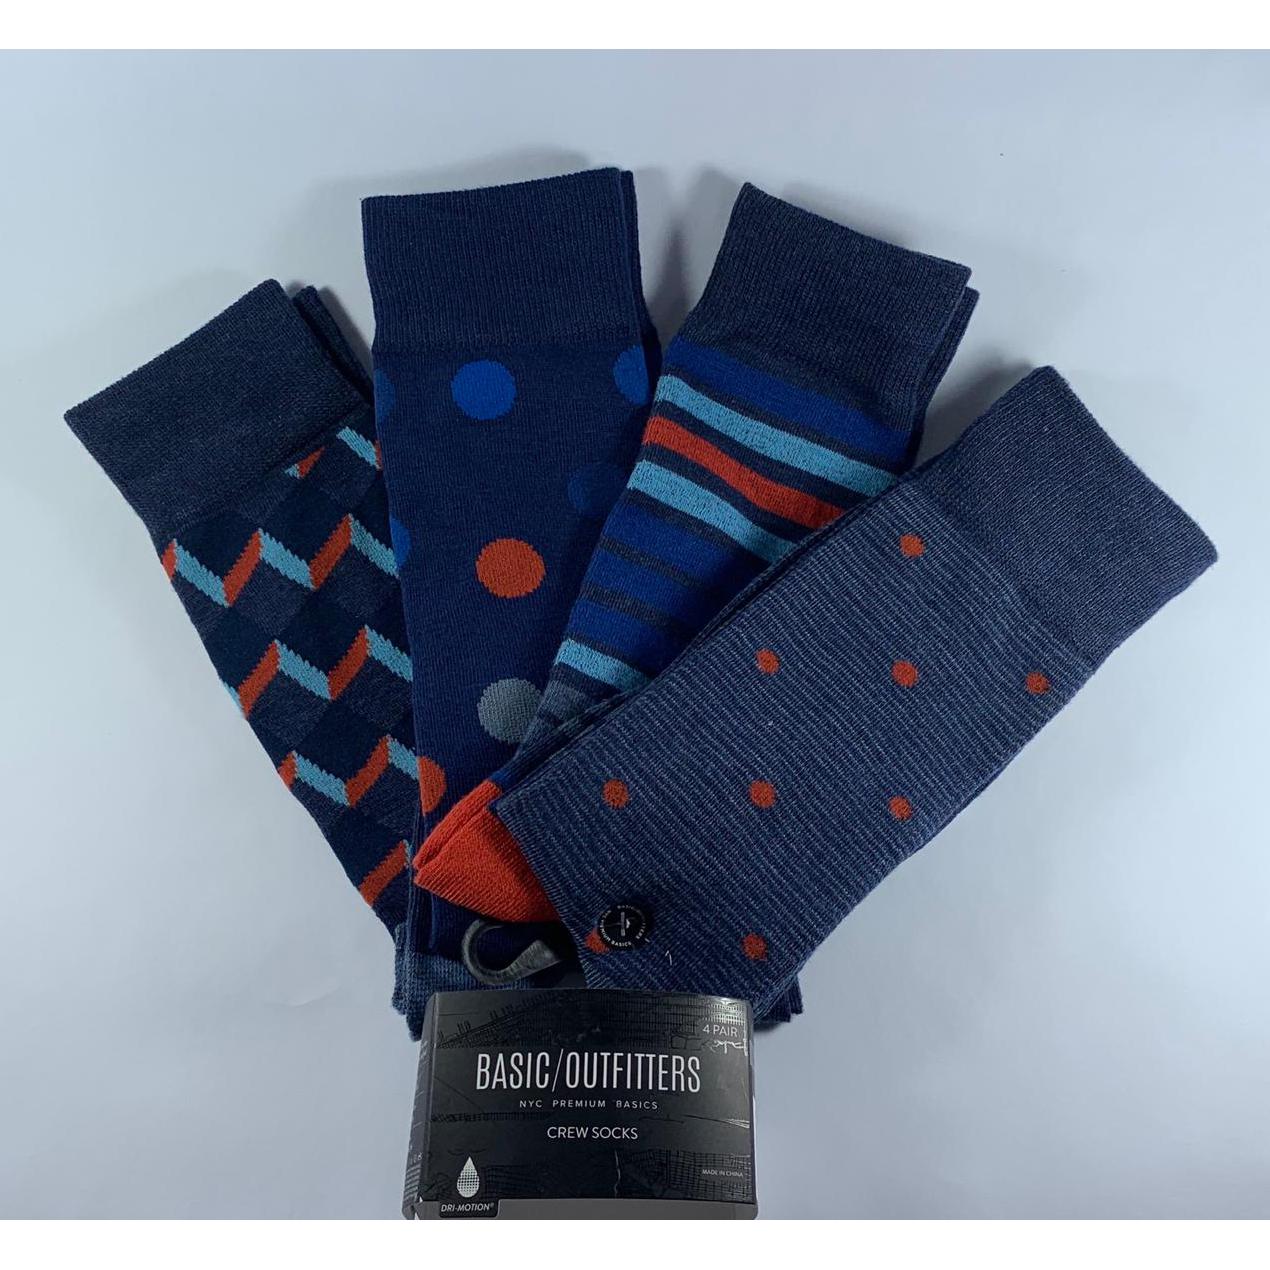 Medias de Hombre - Basic outfitters - 4 pares azul oscuro con estampado (Dry Motion) - The Gift Shop Costa Rica